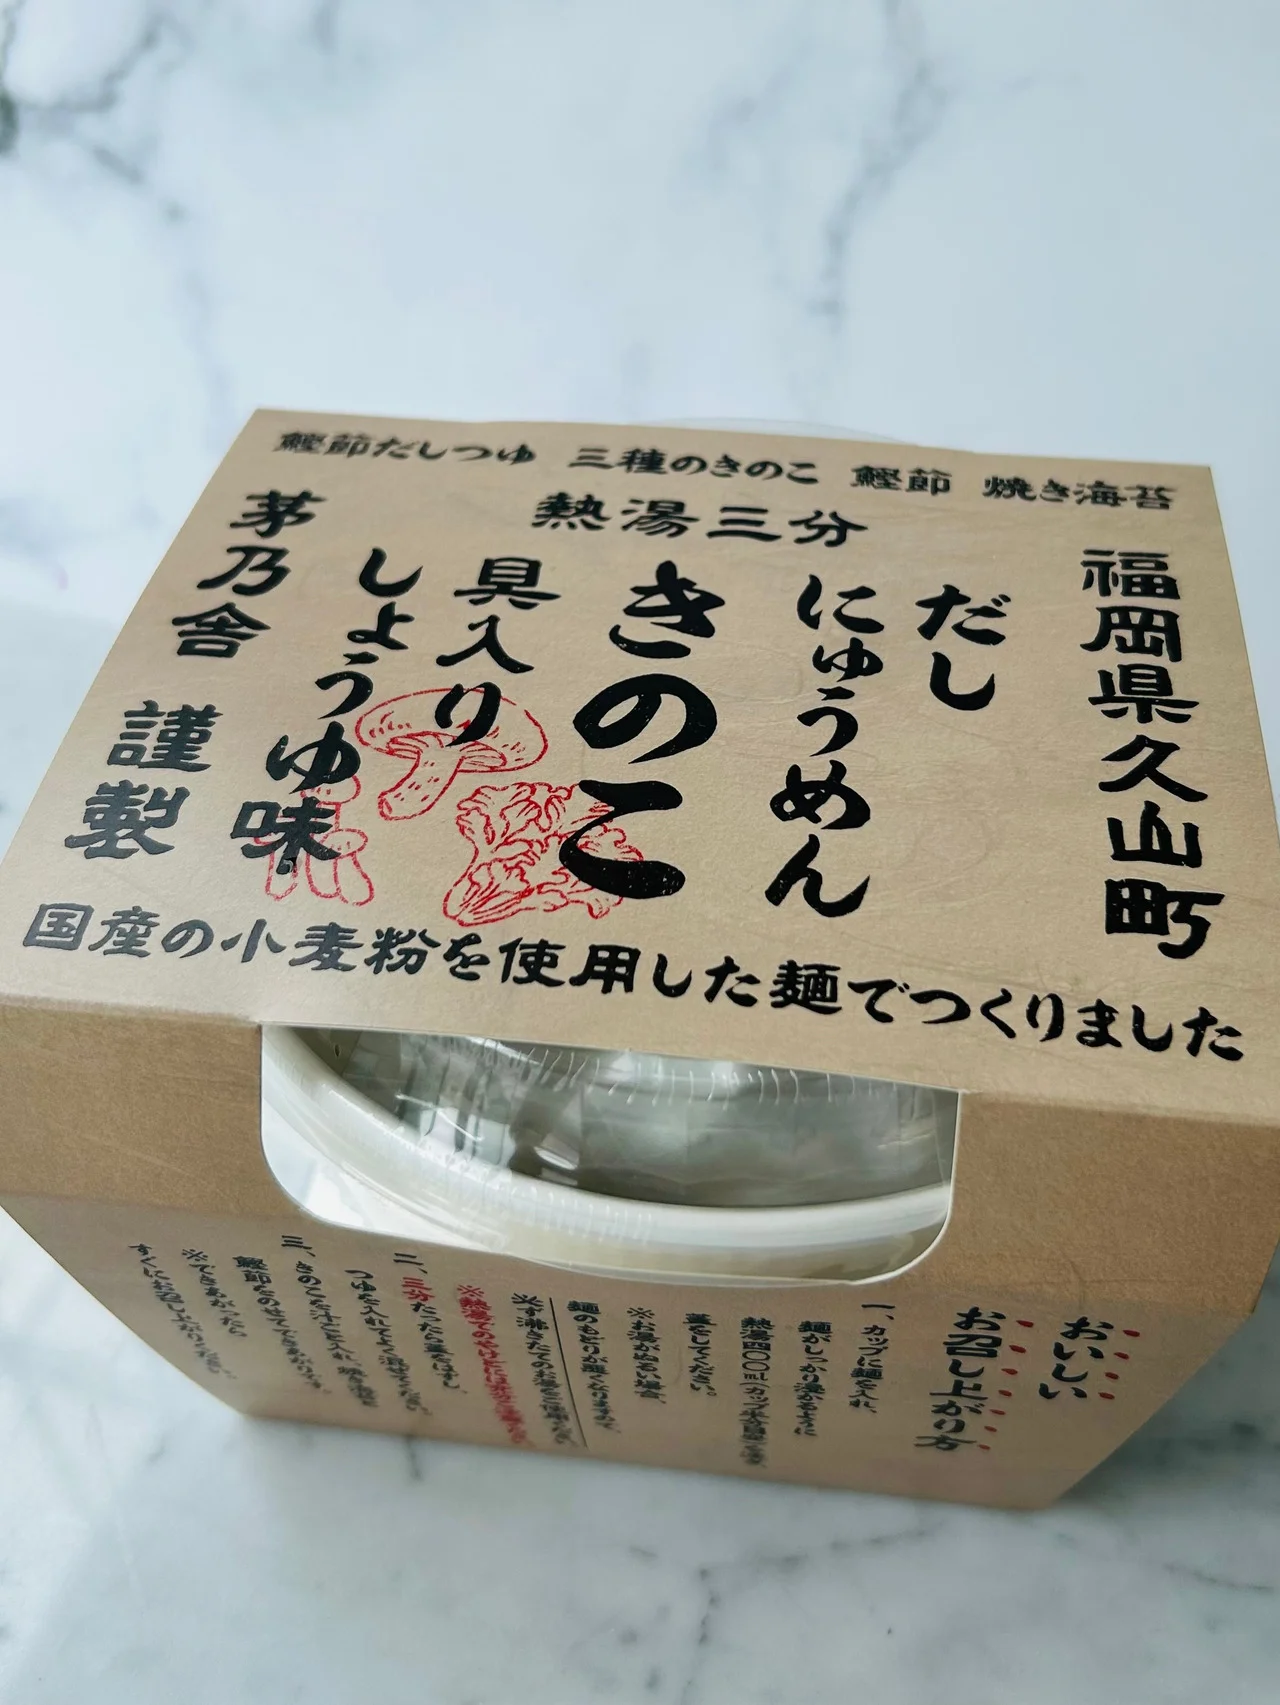 【茅乃舎】の高級カップ麺で贅沢ランチ